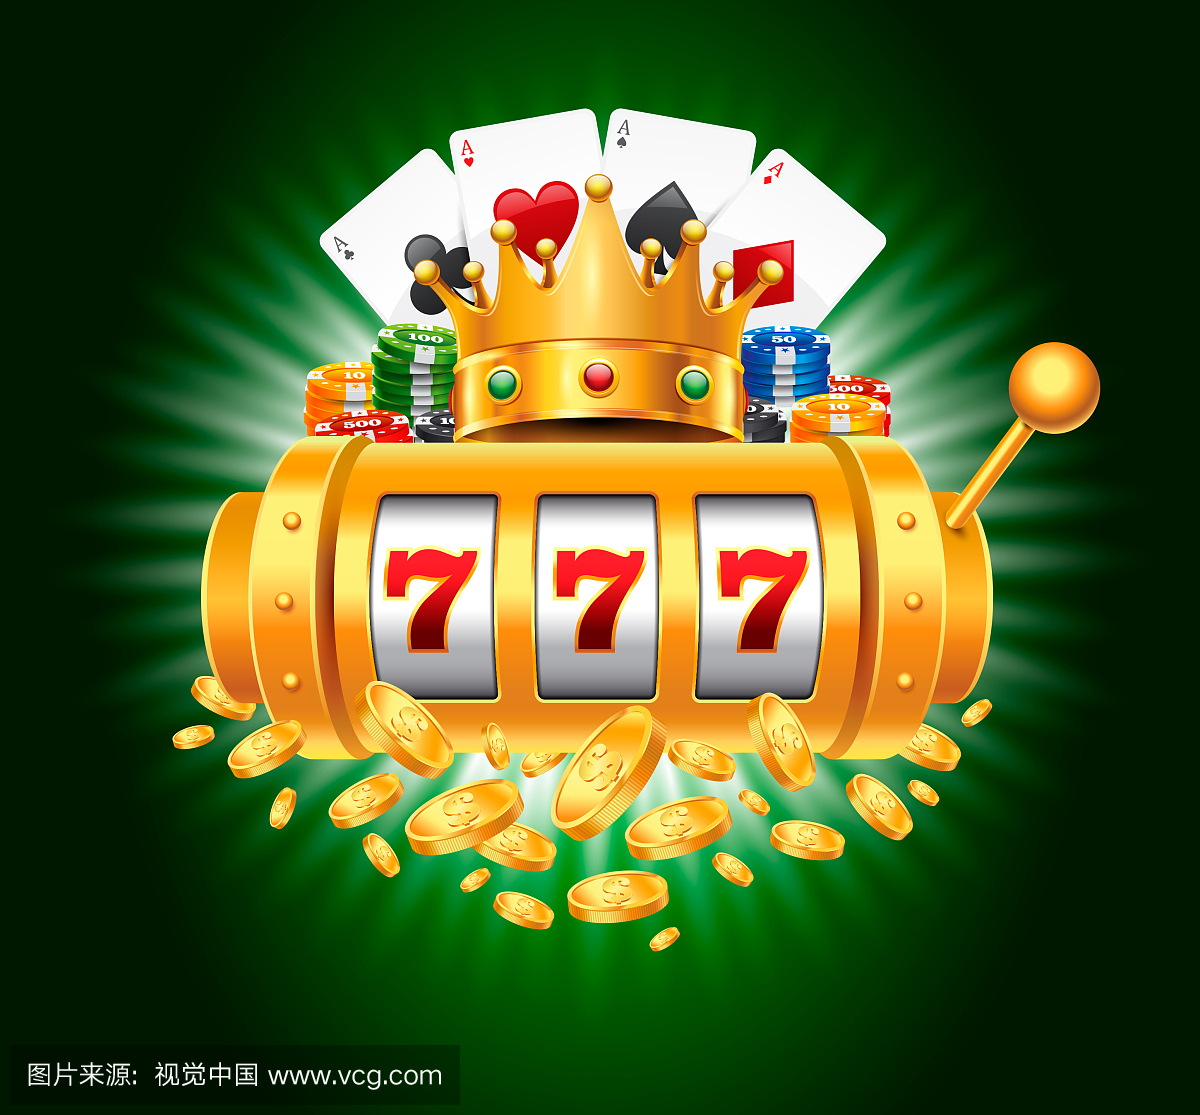 赌博筹码和梯度绿色背景与777和金币的老虎机